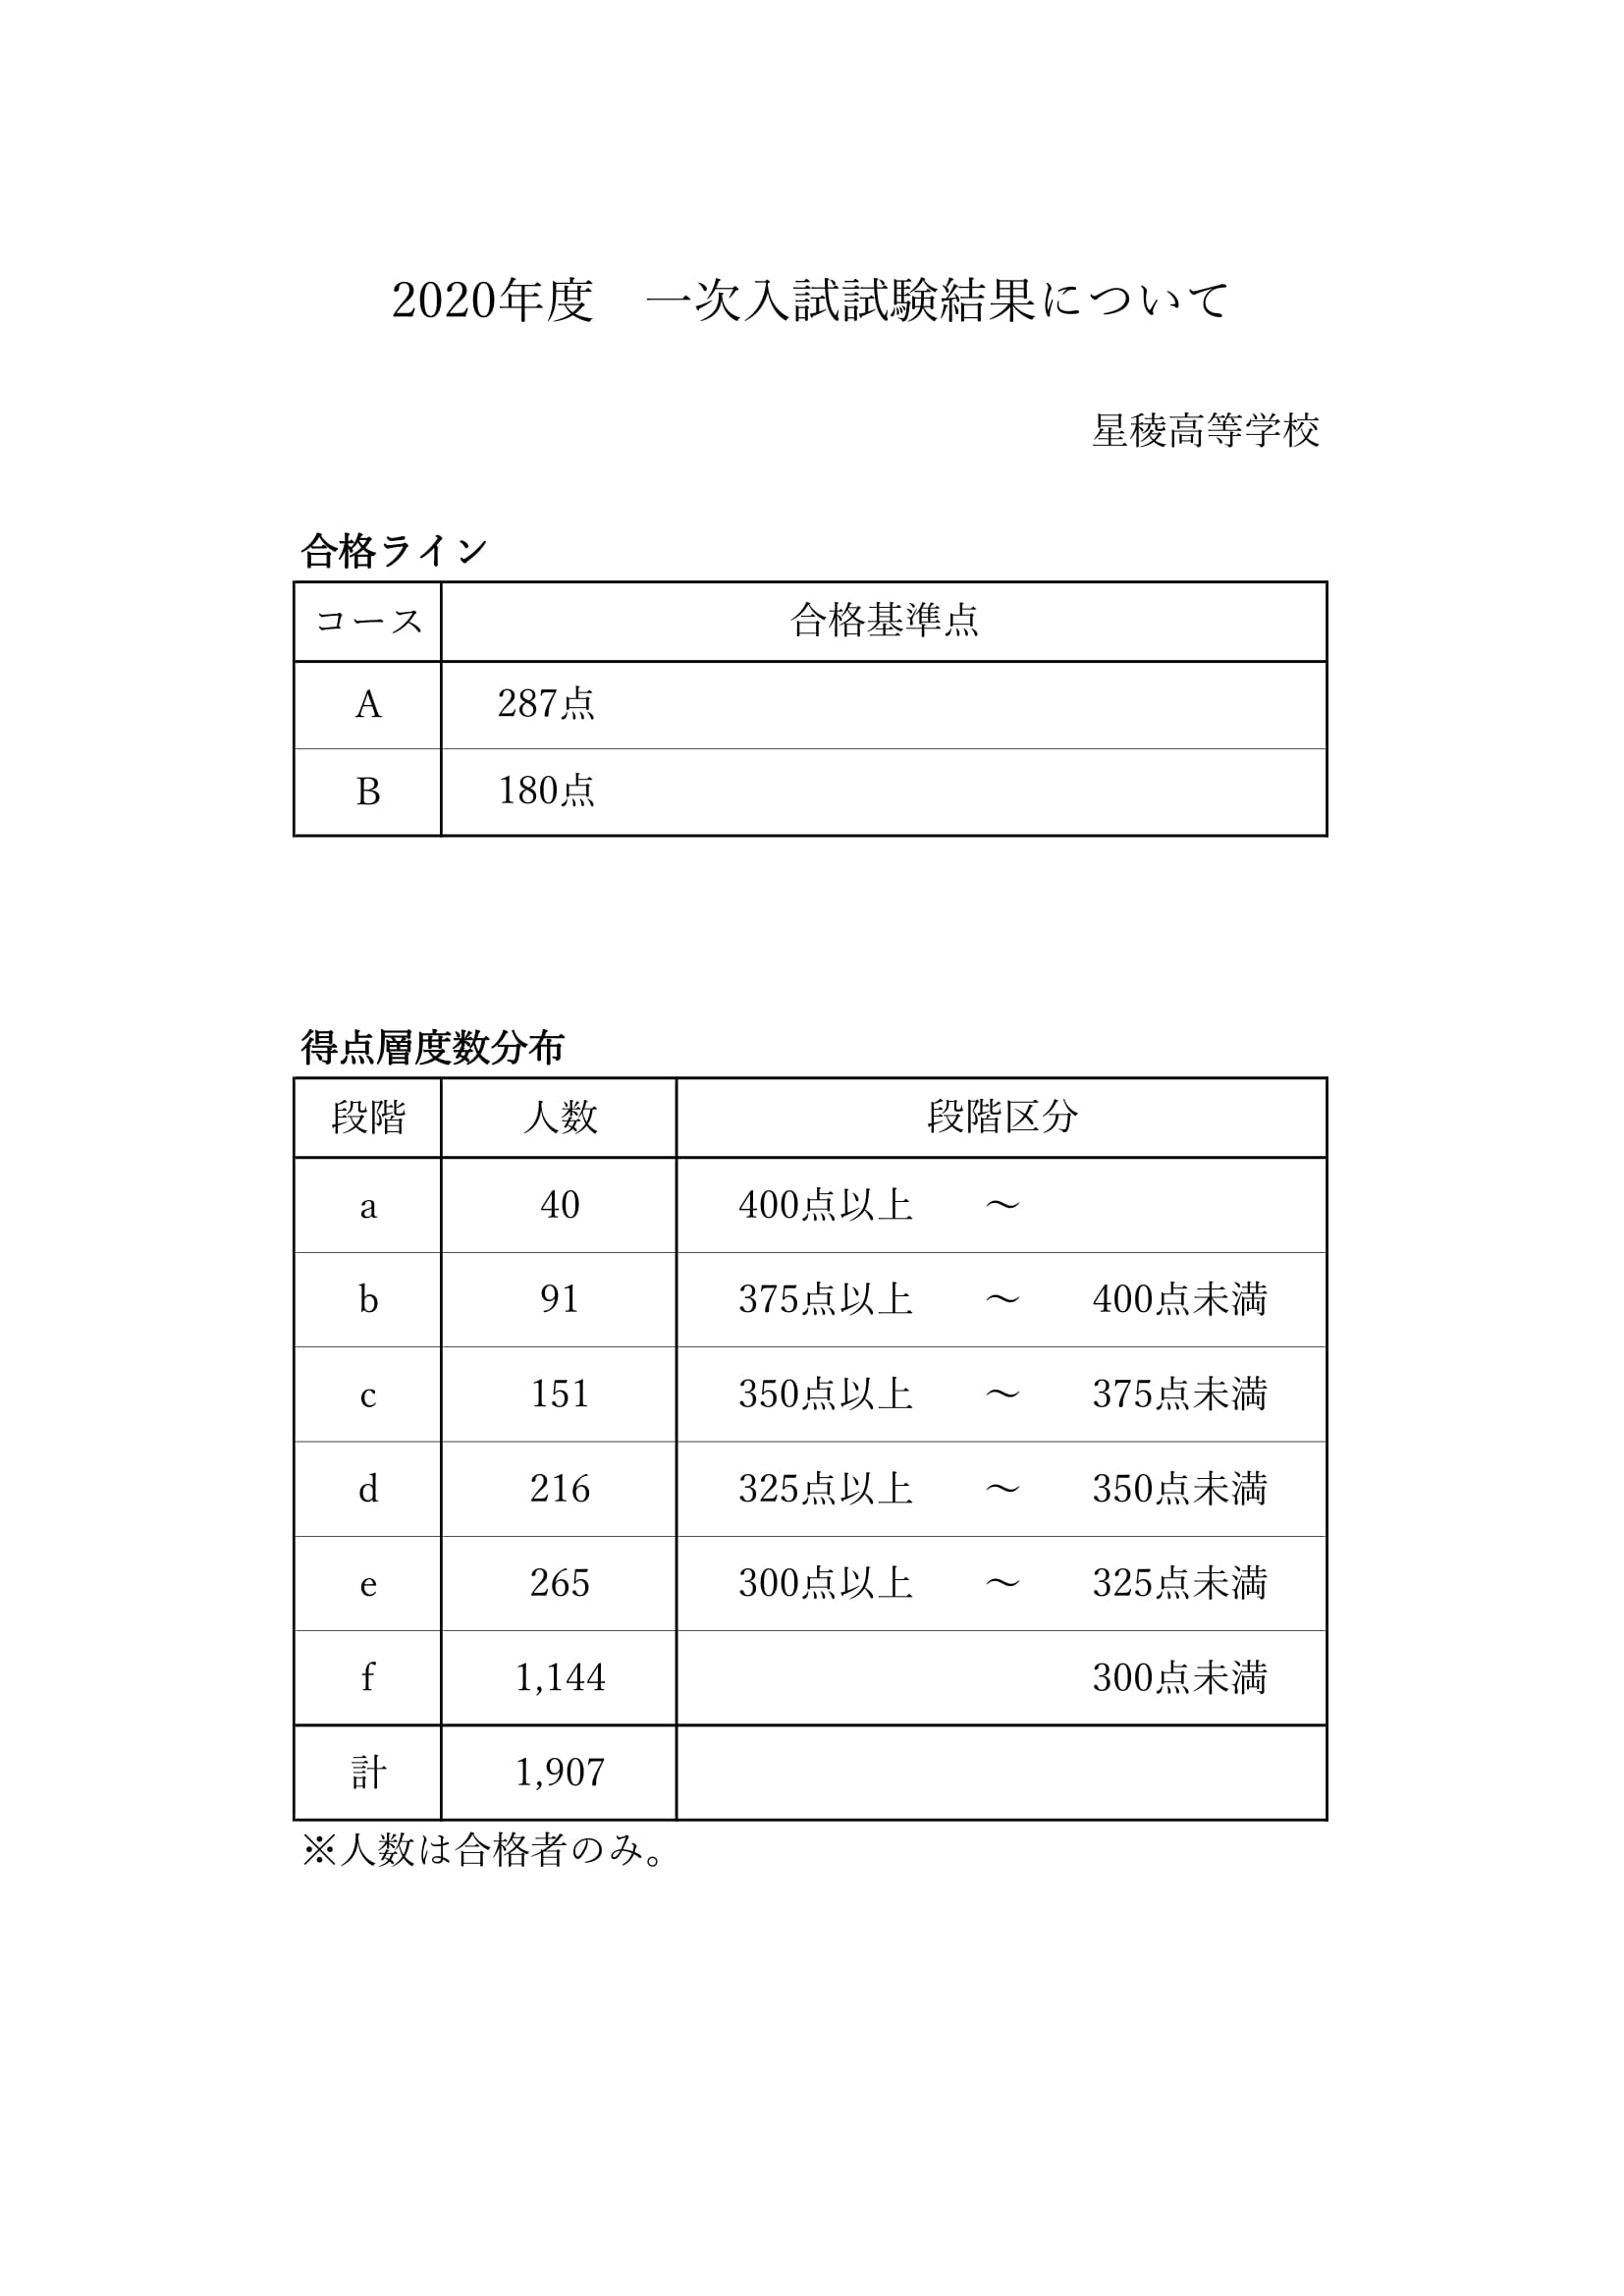 公立 ライン 2020 石川 県 入試 高校 合格